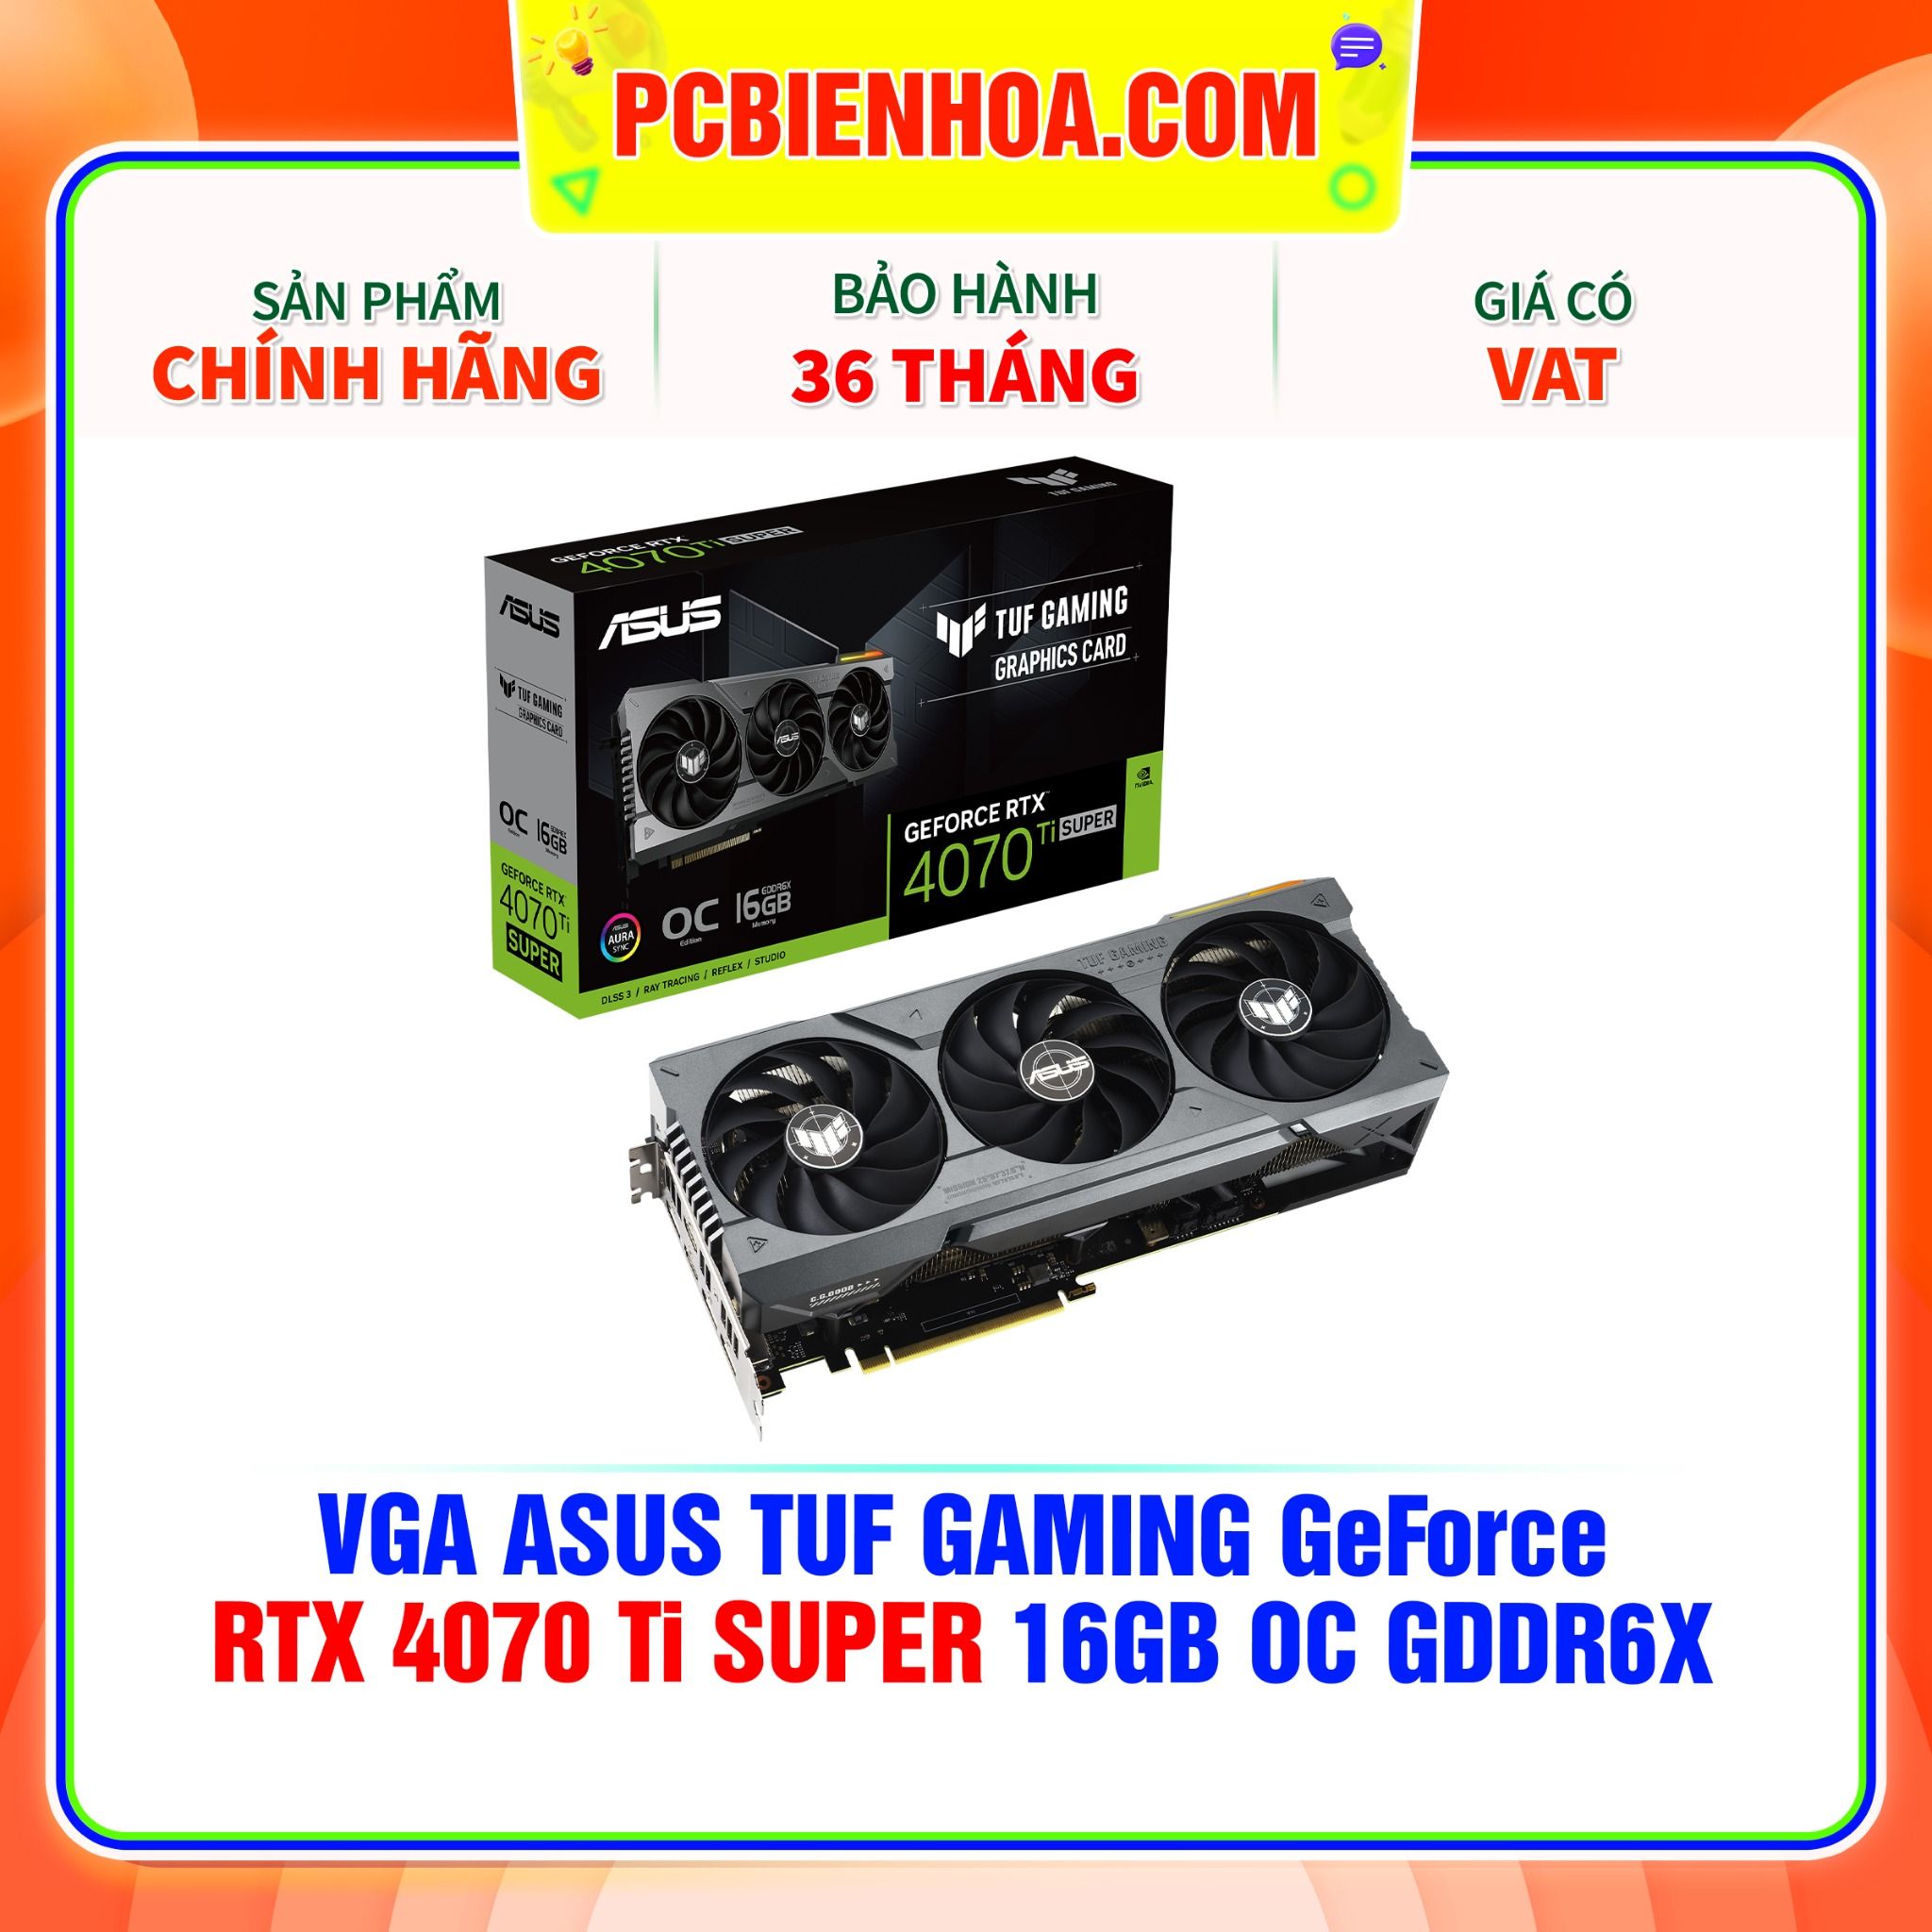  VGA ASUS TUF GAMING GeForce RTX 4070 Ti SUPER 16GB OC GDDR6X ( TUF-RTX4070TIS-O16G-GAMING ) 